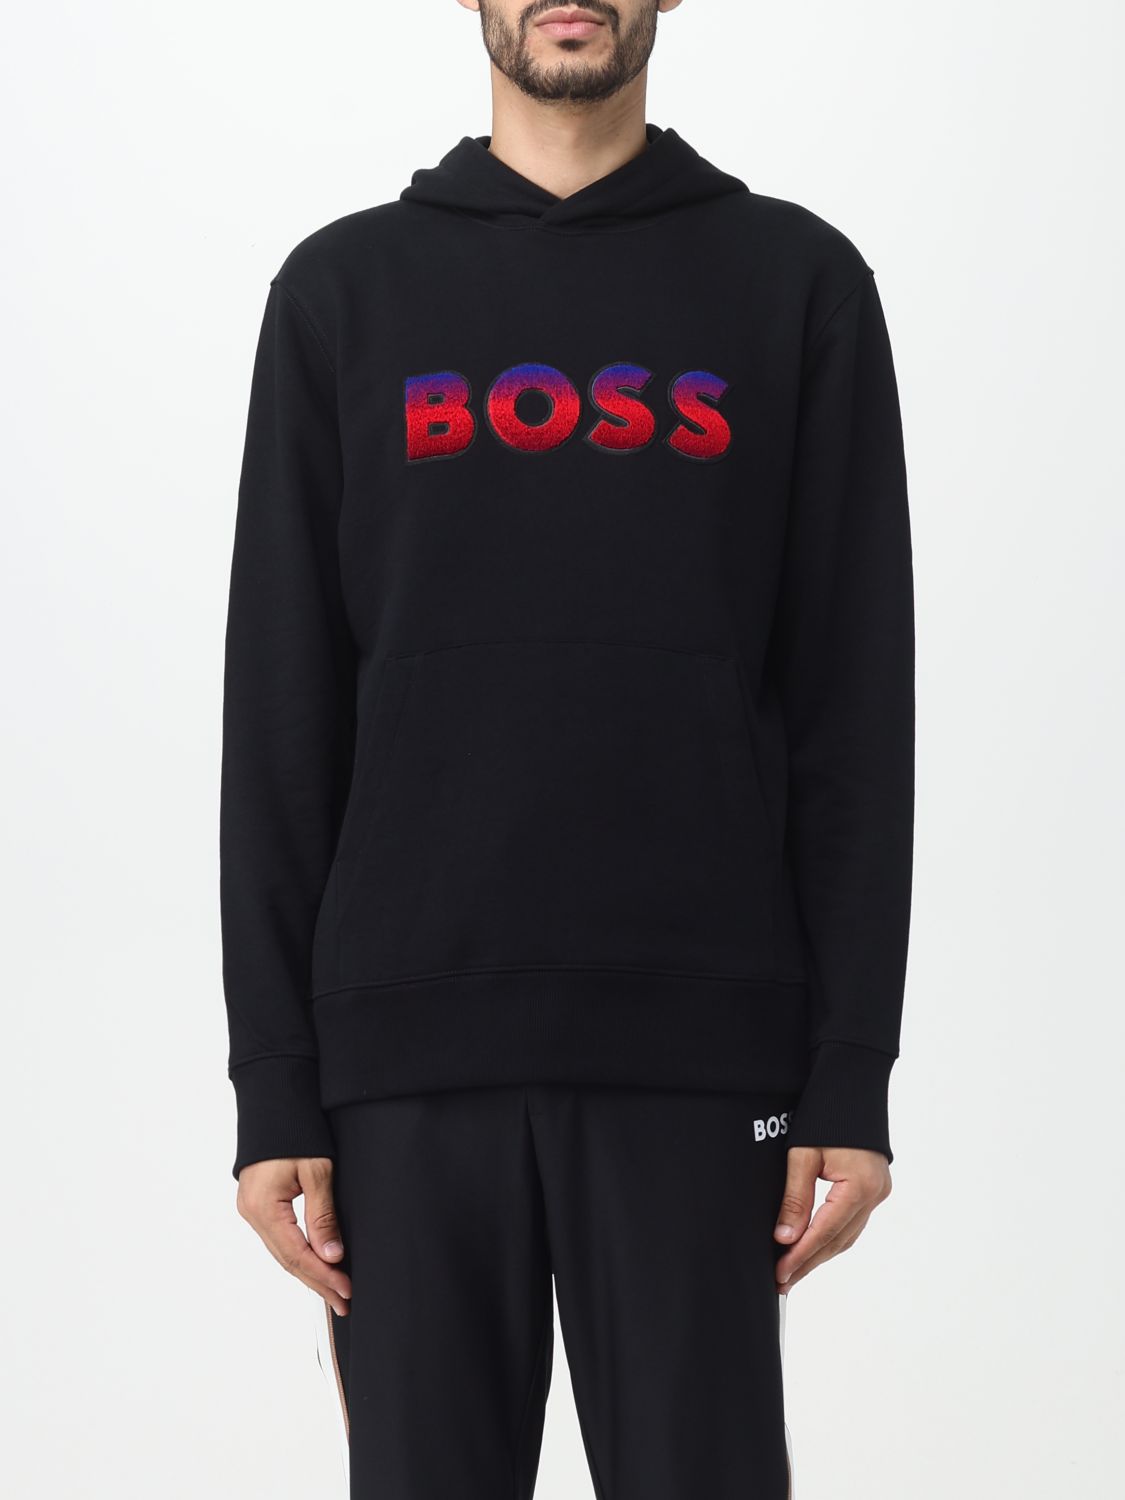 Hugo Boss Sweatshirt Boss Herren Farbe Schwarz In Black